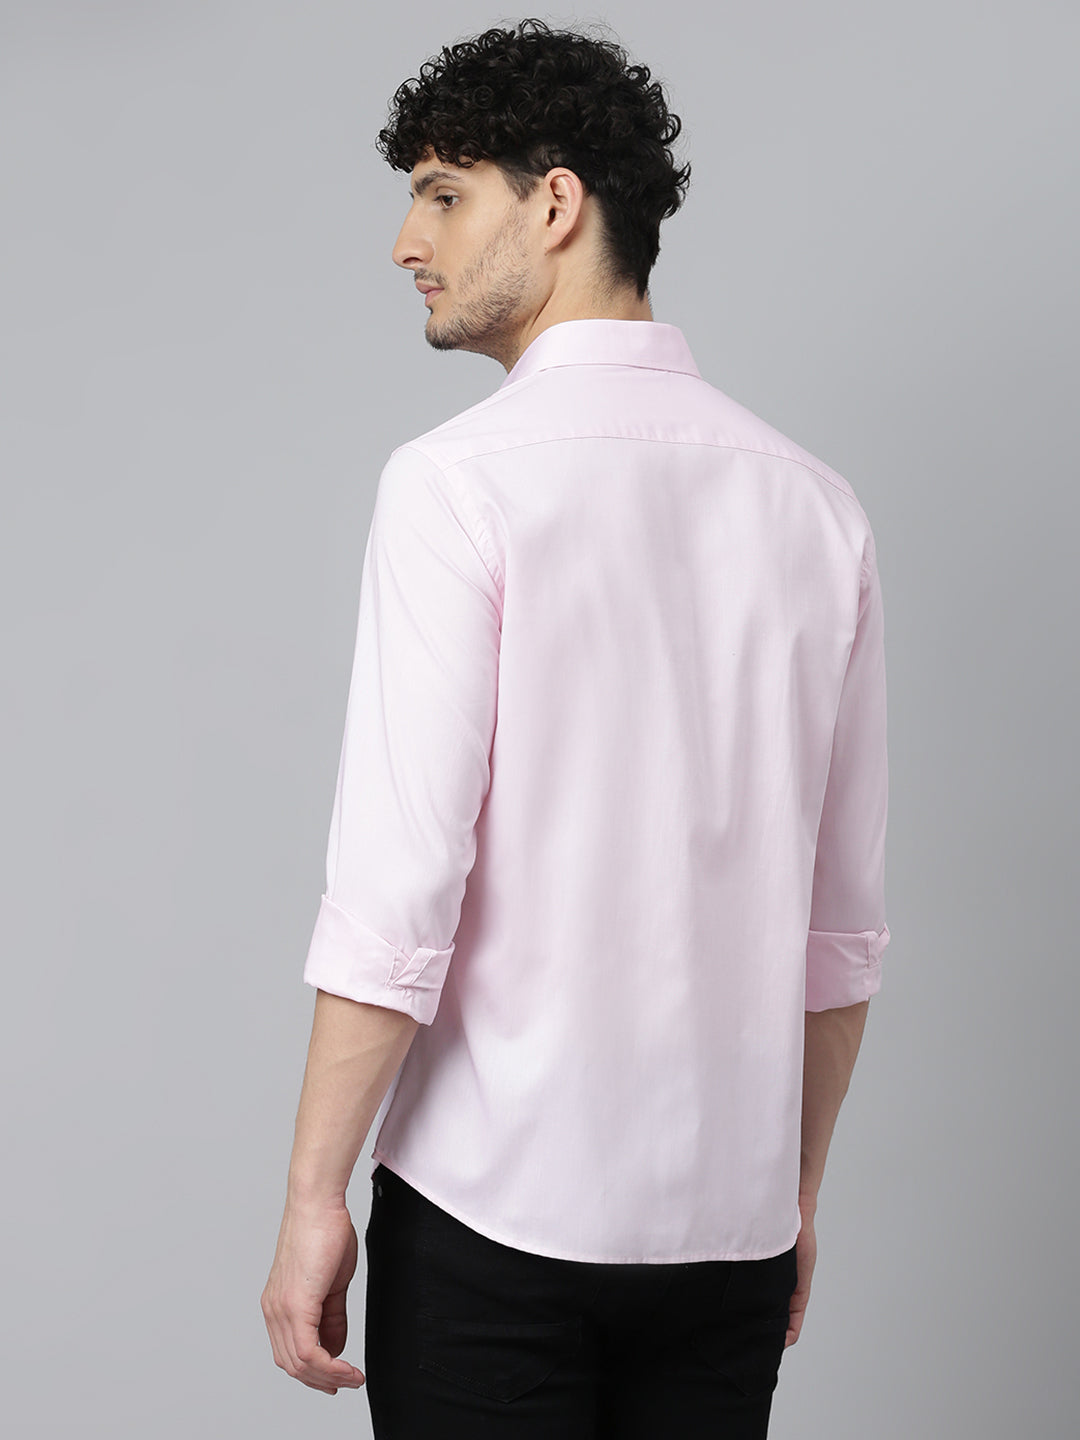 Don Vino Men's Pink Slim Fit Shirt